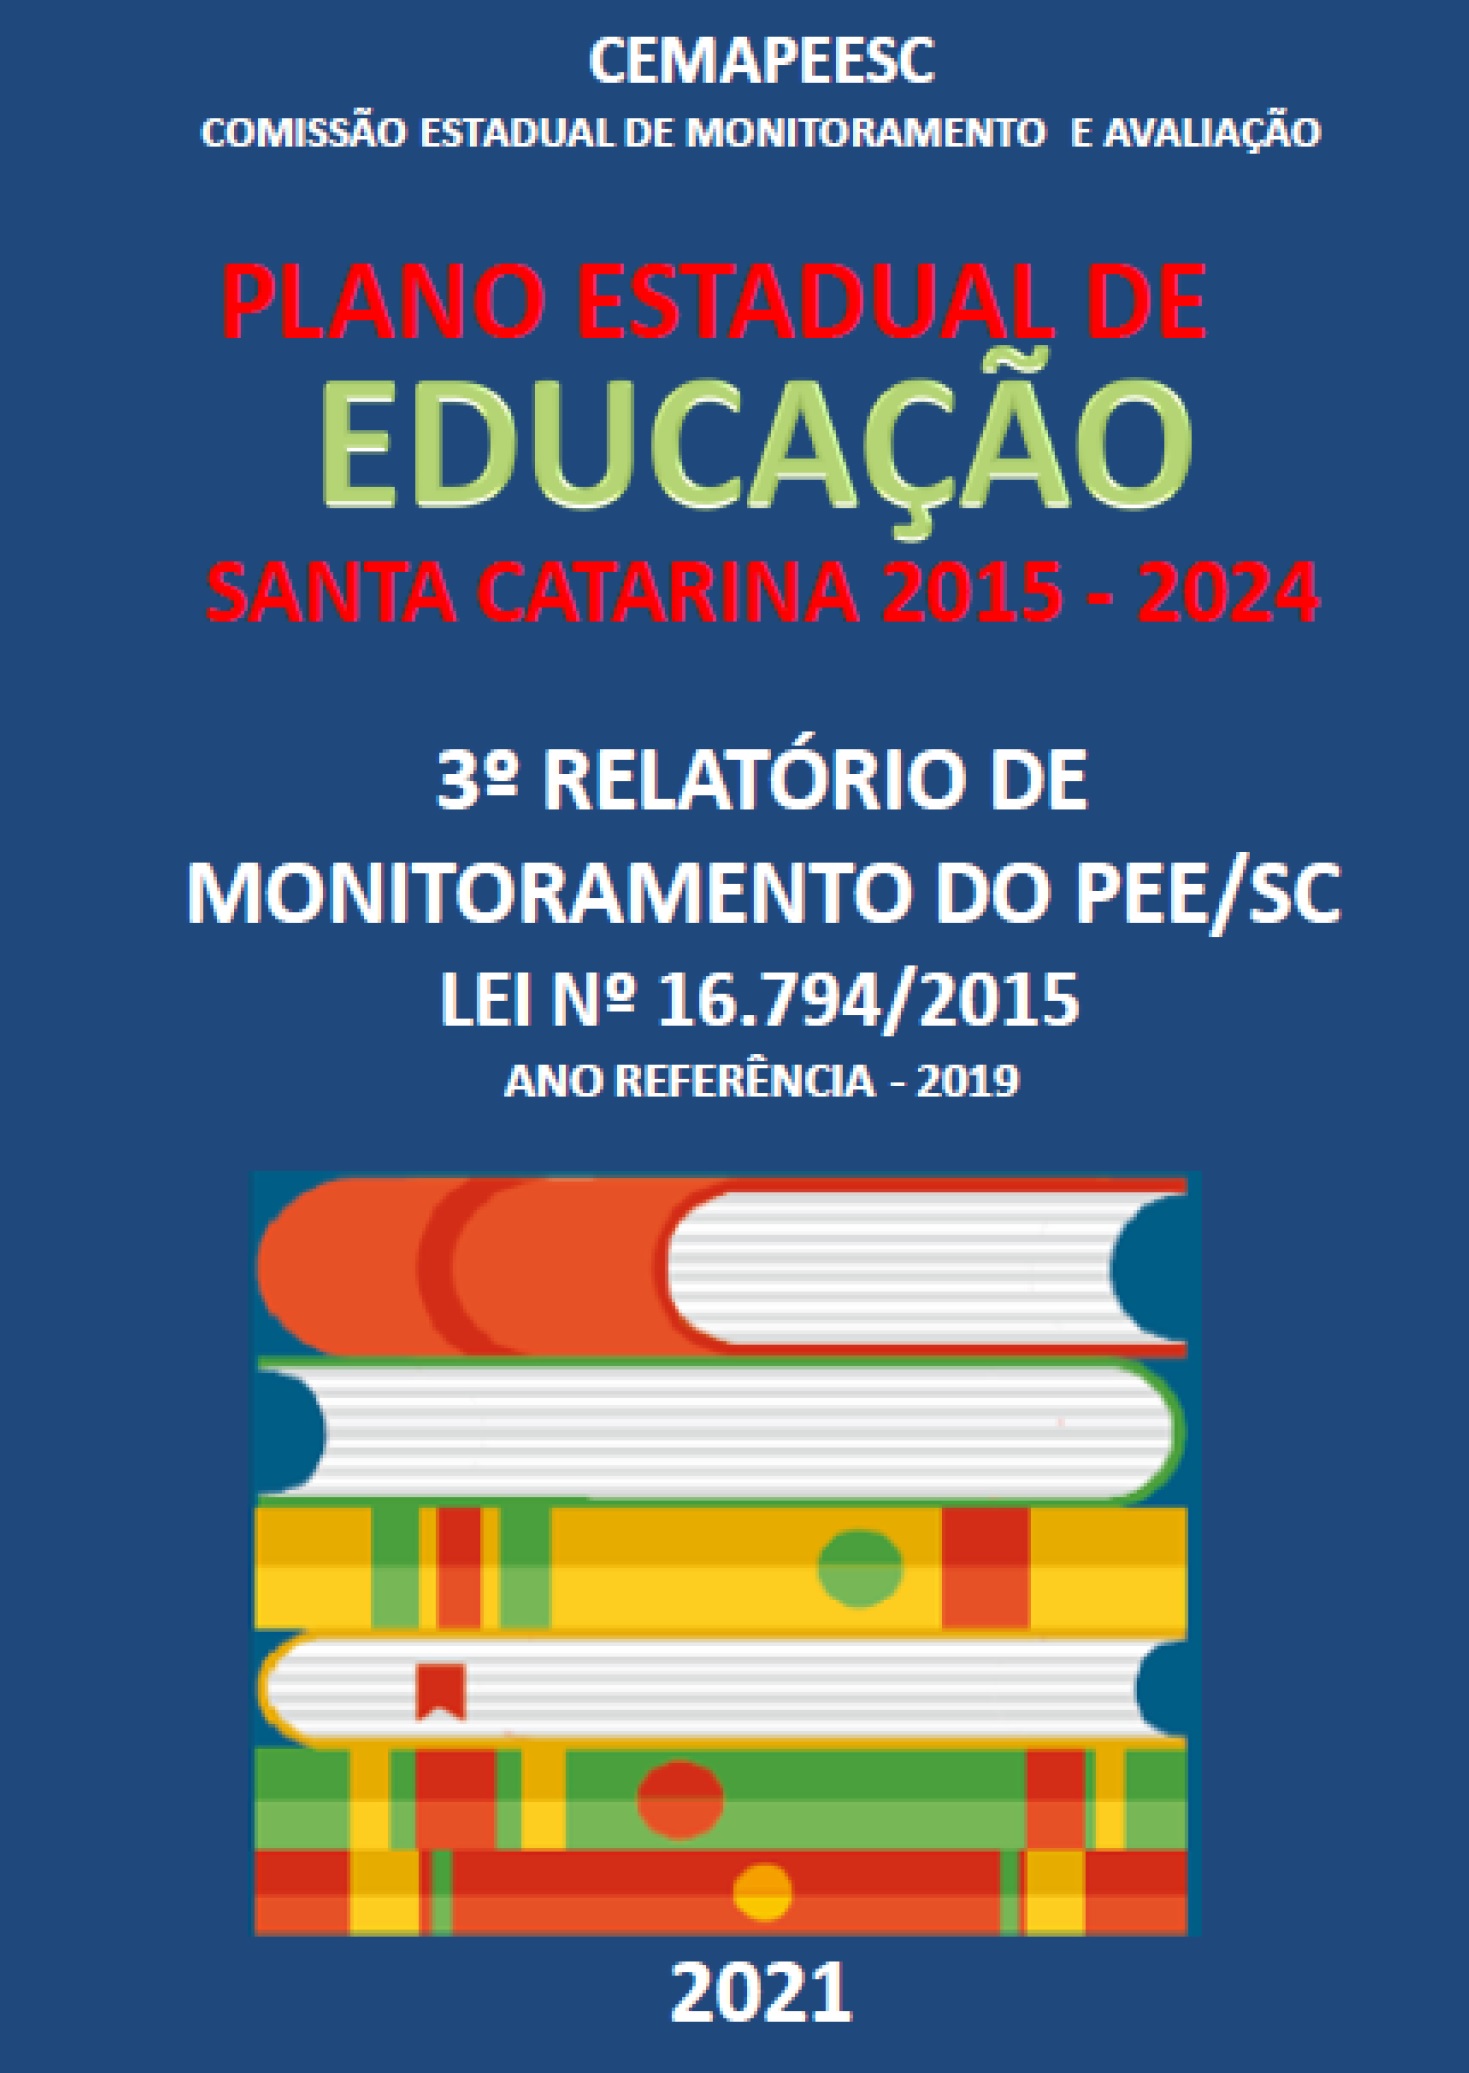 Cartaz fundo azul e texto: Comissão Estadual de Monitoramento e Avaliação Plano Estadual de Educação de Santa Catarina 2015-2024  3º RELATÓRIO DE MONITORAMENTO DO PLANO ESTADUAL DE EDUCAÇÃO LEI Nº 16.794/2015 ANO REFERÊNCIA – 2019